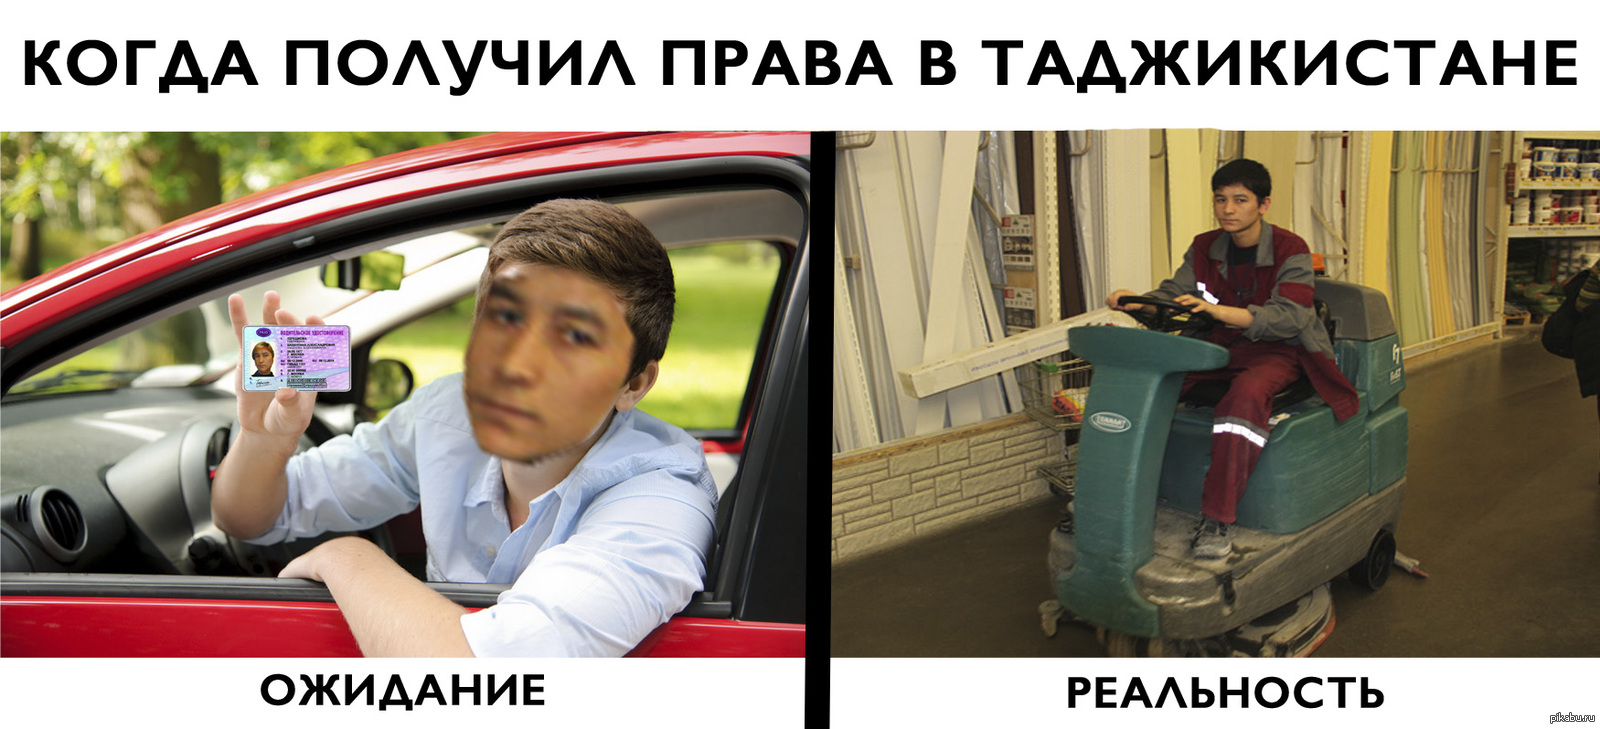 Мемы про водительские права